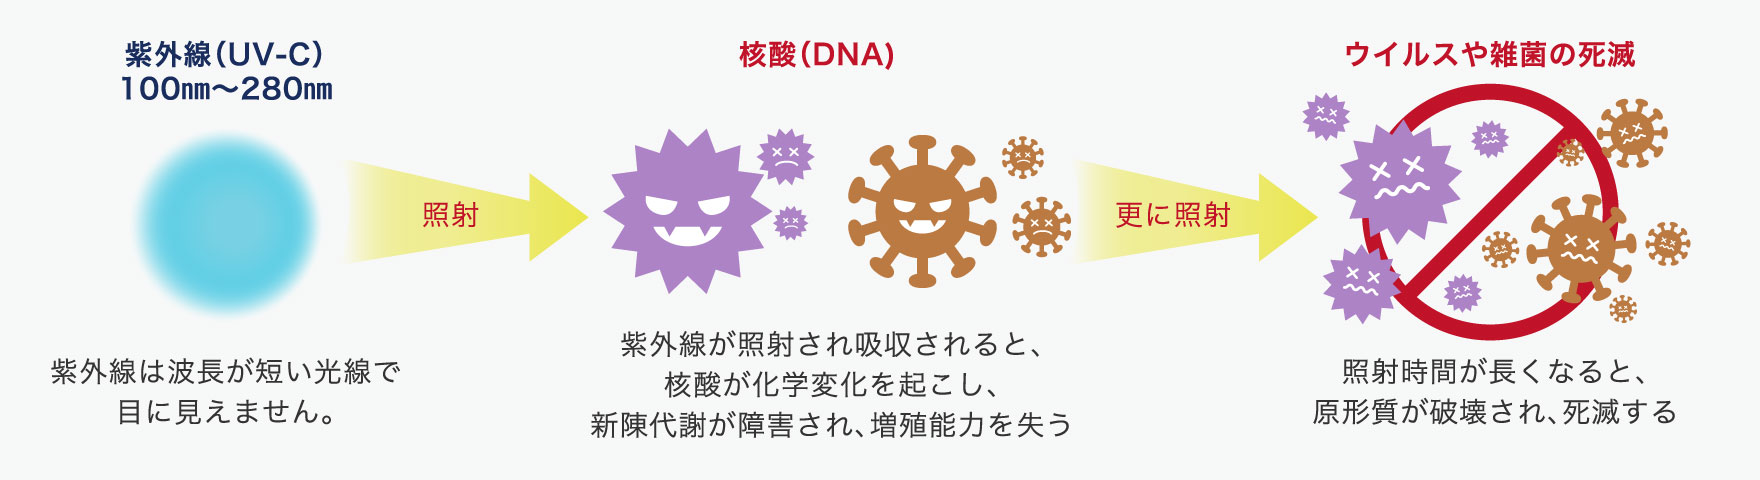 紫外線（UV-C）100㎚～280㎚を→照射→（紫外線は波長が短い光線で目に見えません。）核酸[DNA]（紫外線が照射され吸収されると、核酸が化学変化を起こし、新陳代謝が障害され、増殖能力を失う）→更に照射→ウイルスや雑菌の死滅（照射時間が長くなると、原形質が破壊され、死滅する）